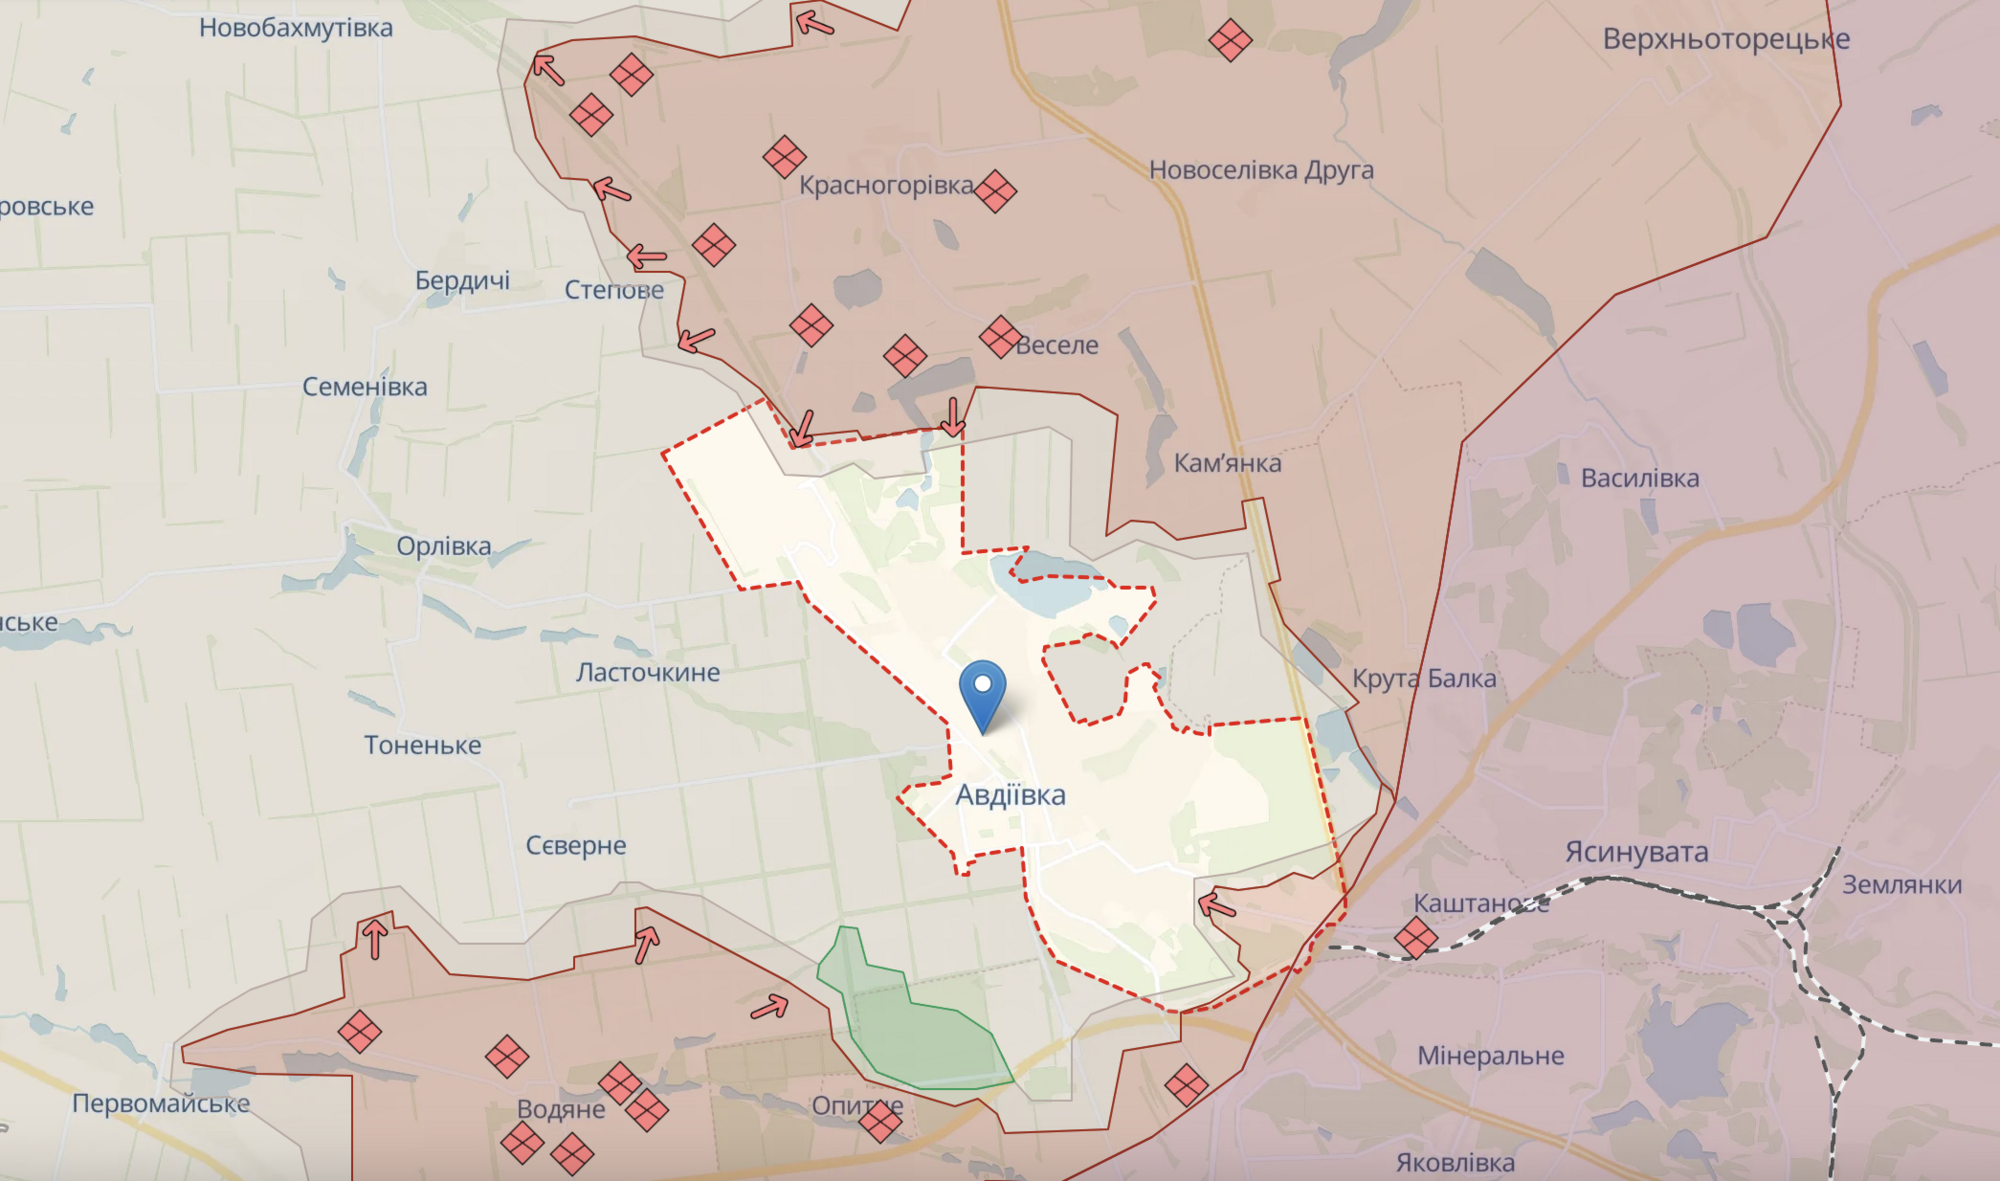 Війська РФ активізувалися на всіх напрямках в районі Авдіївки: Барабаш розповів про ситуацію. Карта